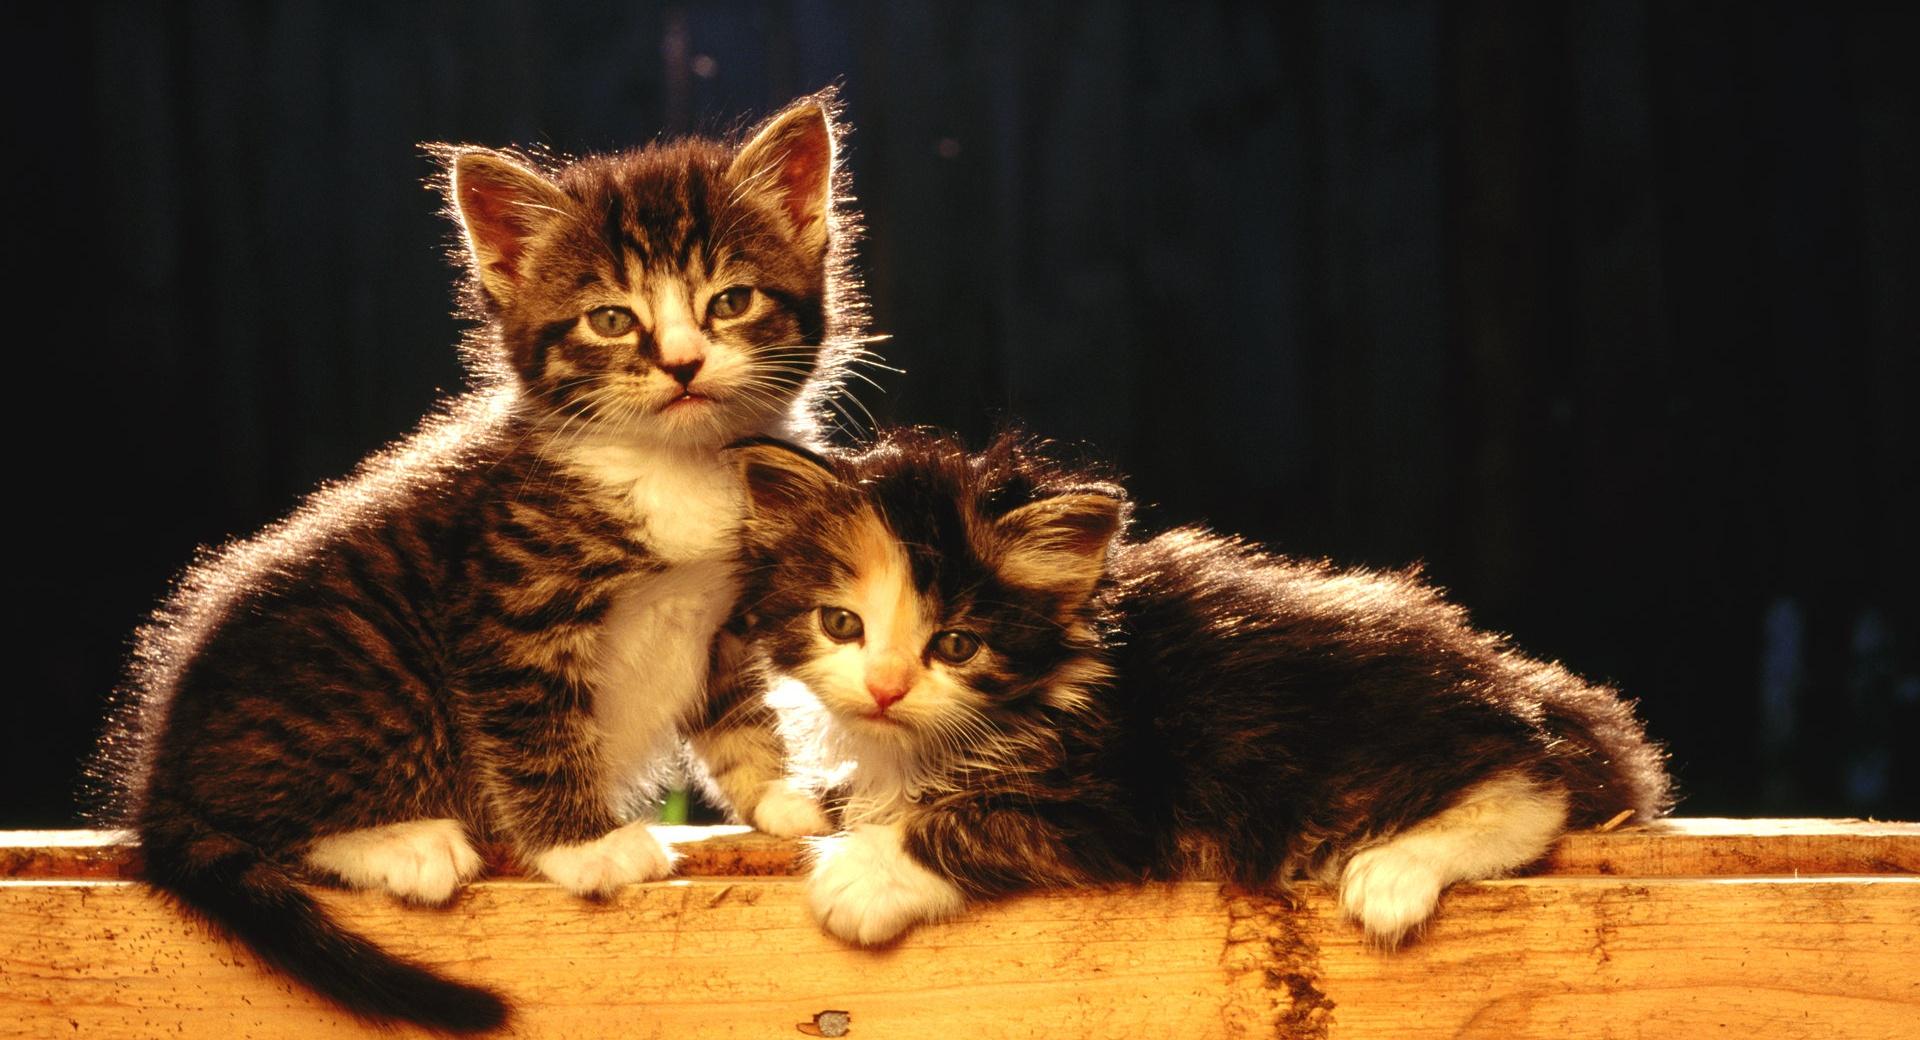 Cute Newborn Kittens wallpapers HD quality